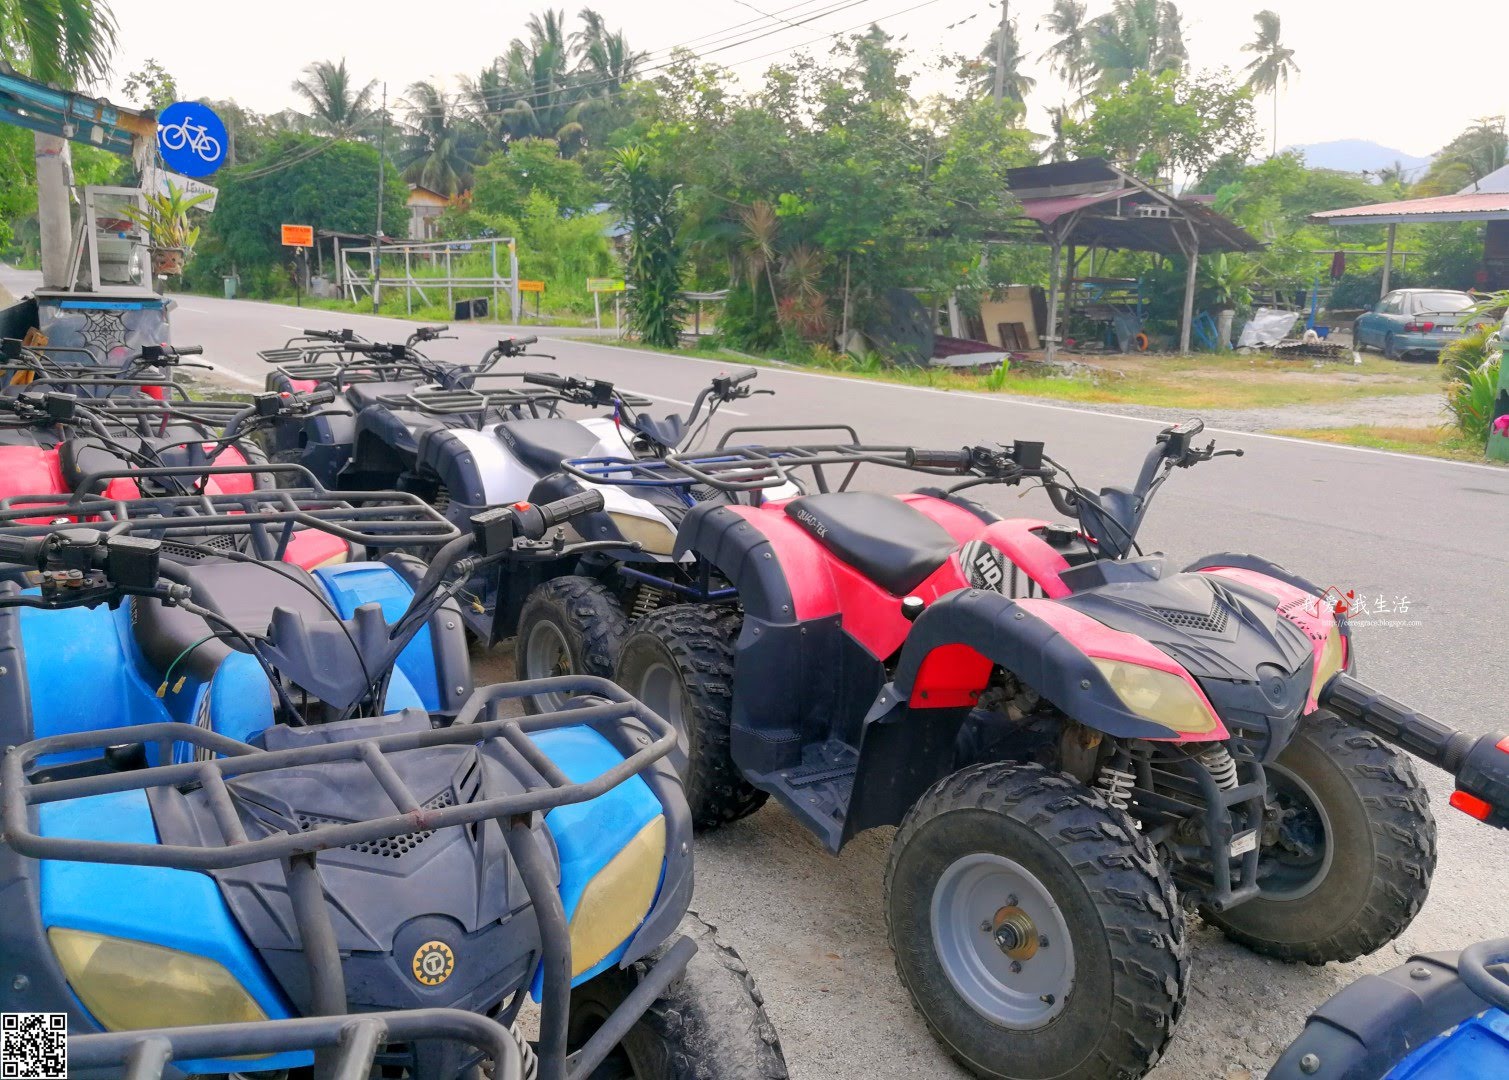 我爱我生活: 【马来西亚】槟城浮罗山背半日游 | Penang ATV Eco Tour + Metta Lodge 慈慧园